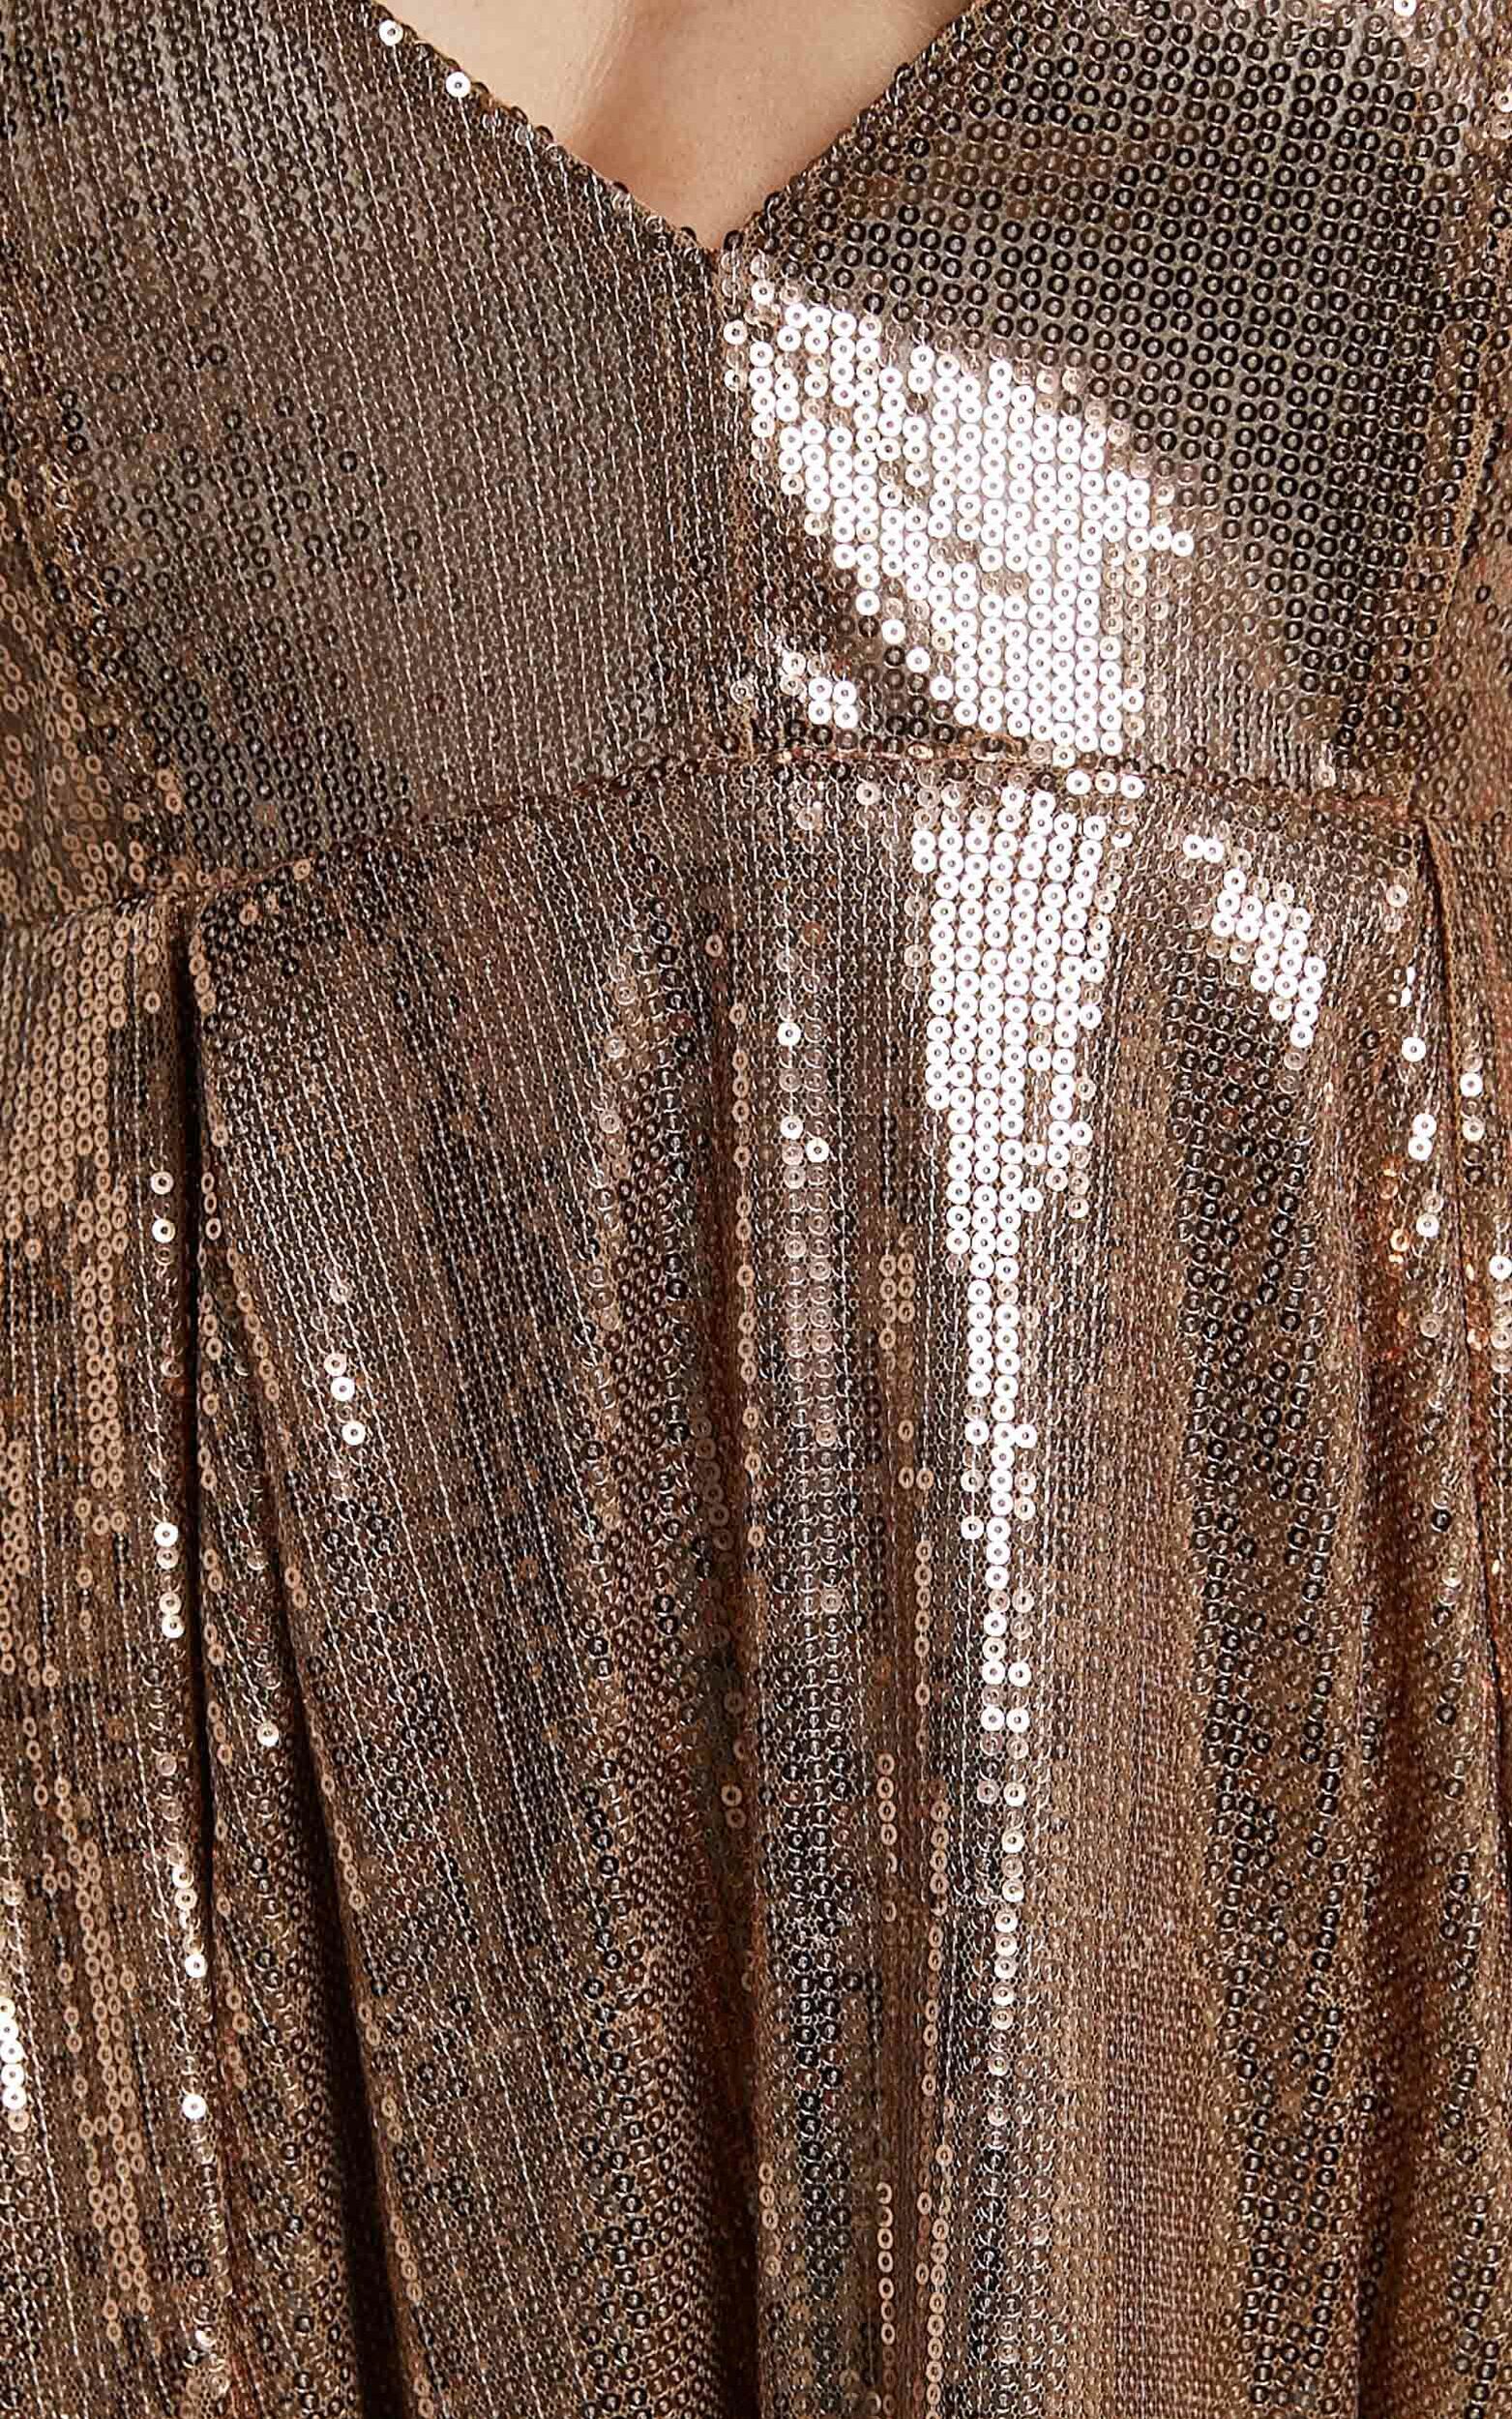 Jinx Mini Dress - V Neck Fit And Flare Sequin Dress in Copper | Showpo USA